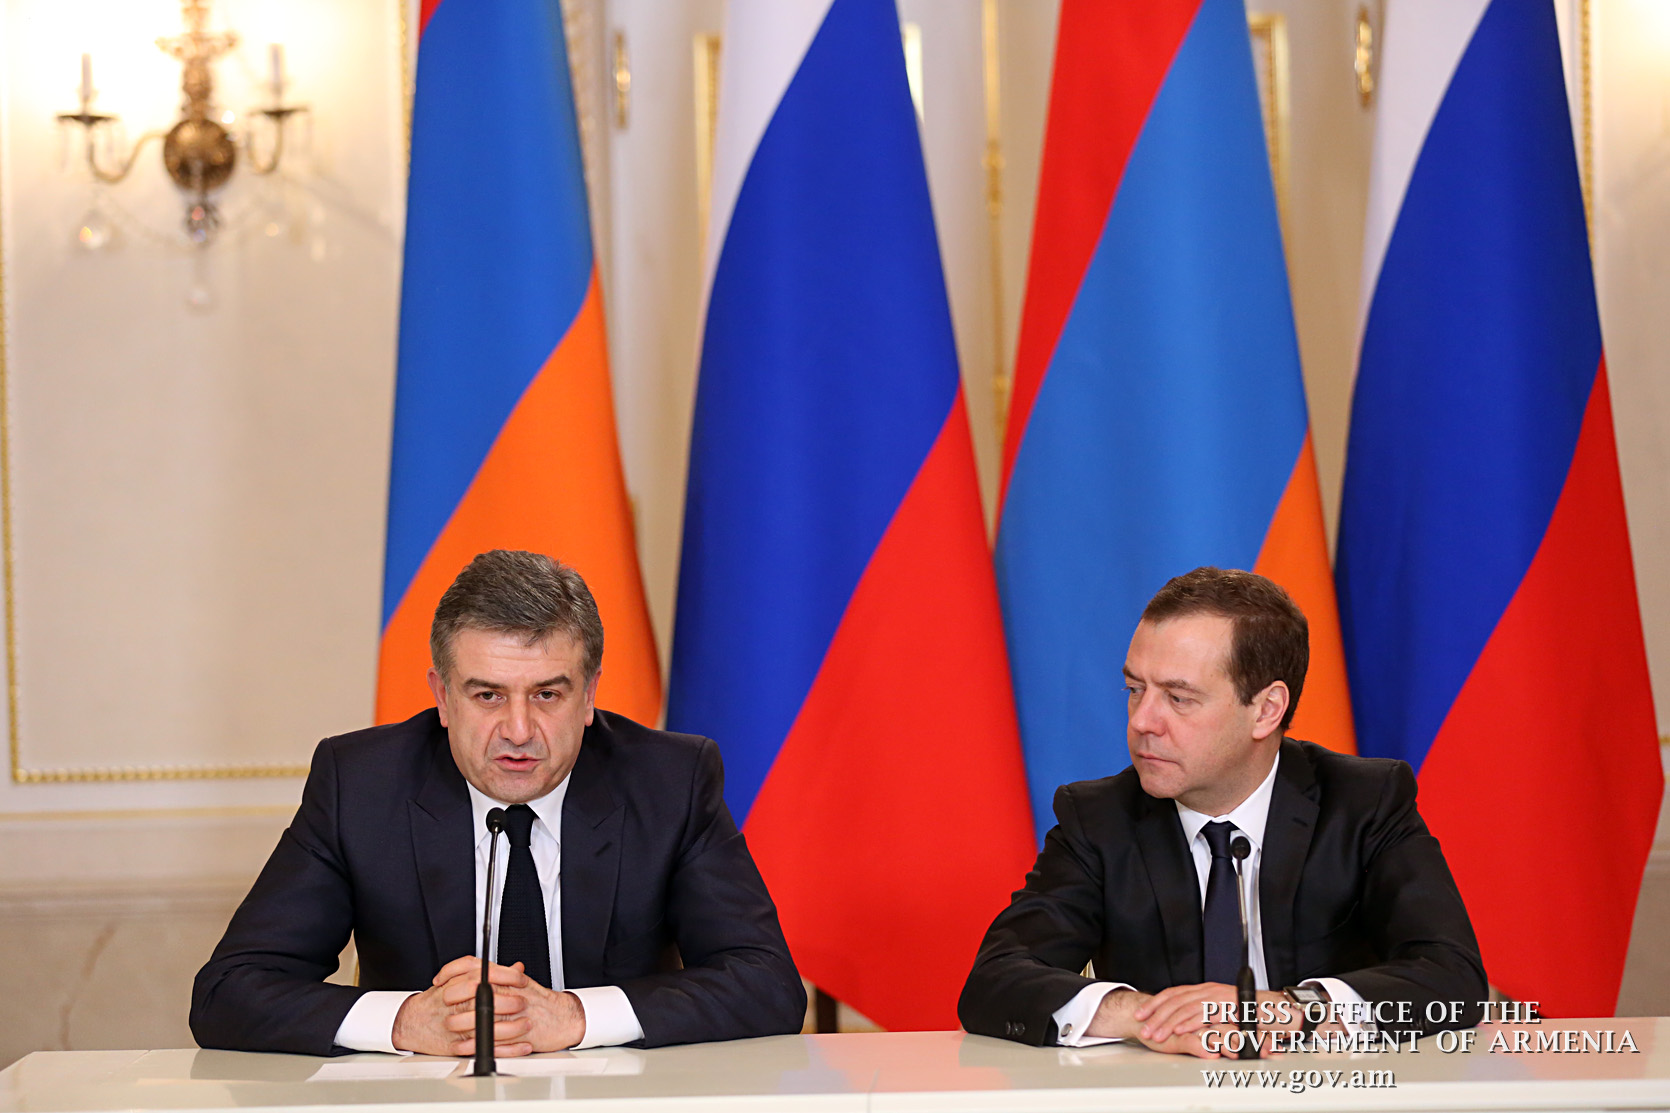 Karapetyan-Medvedev meeting held in Moscow